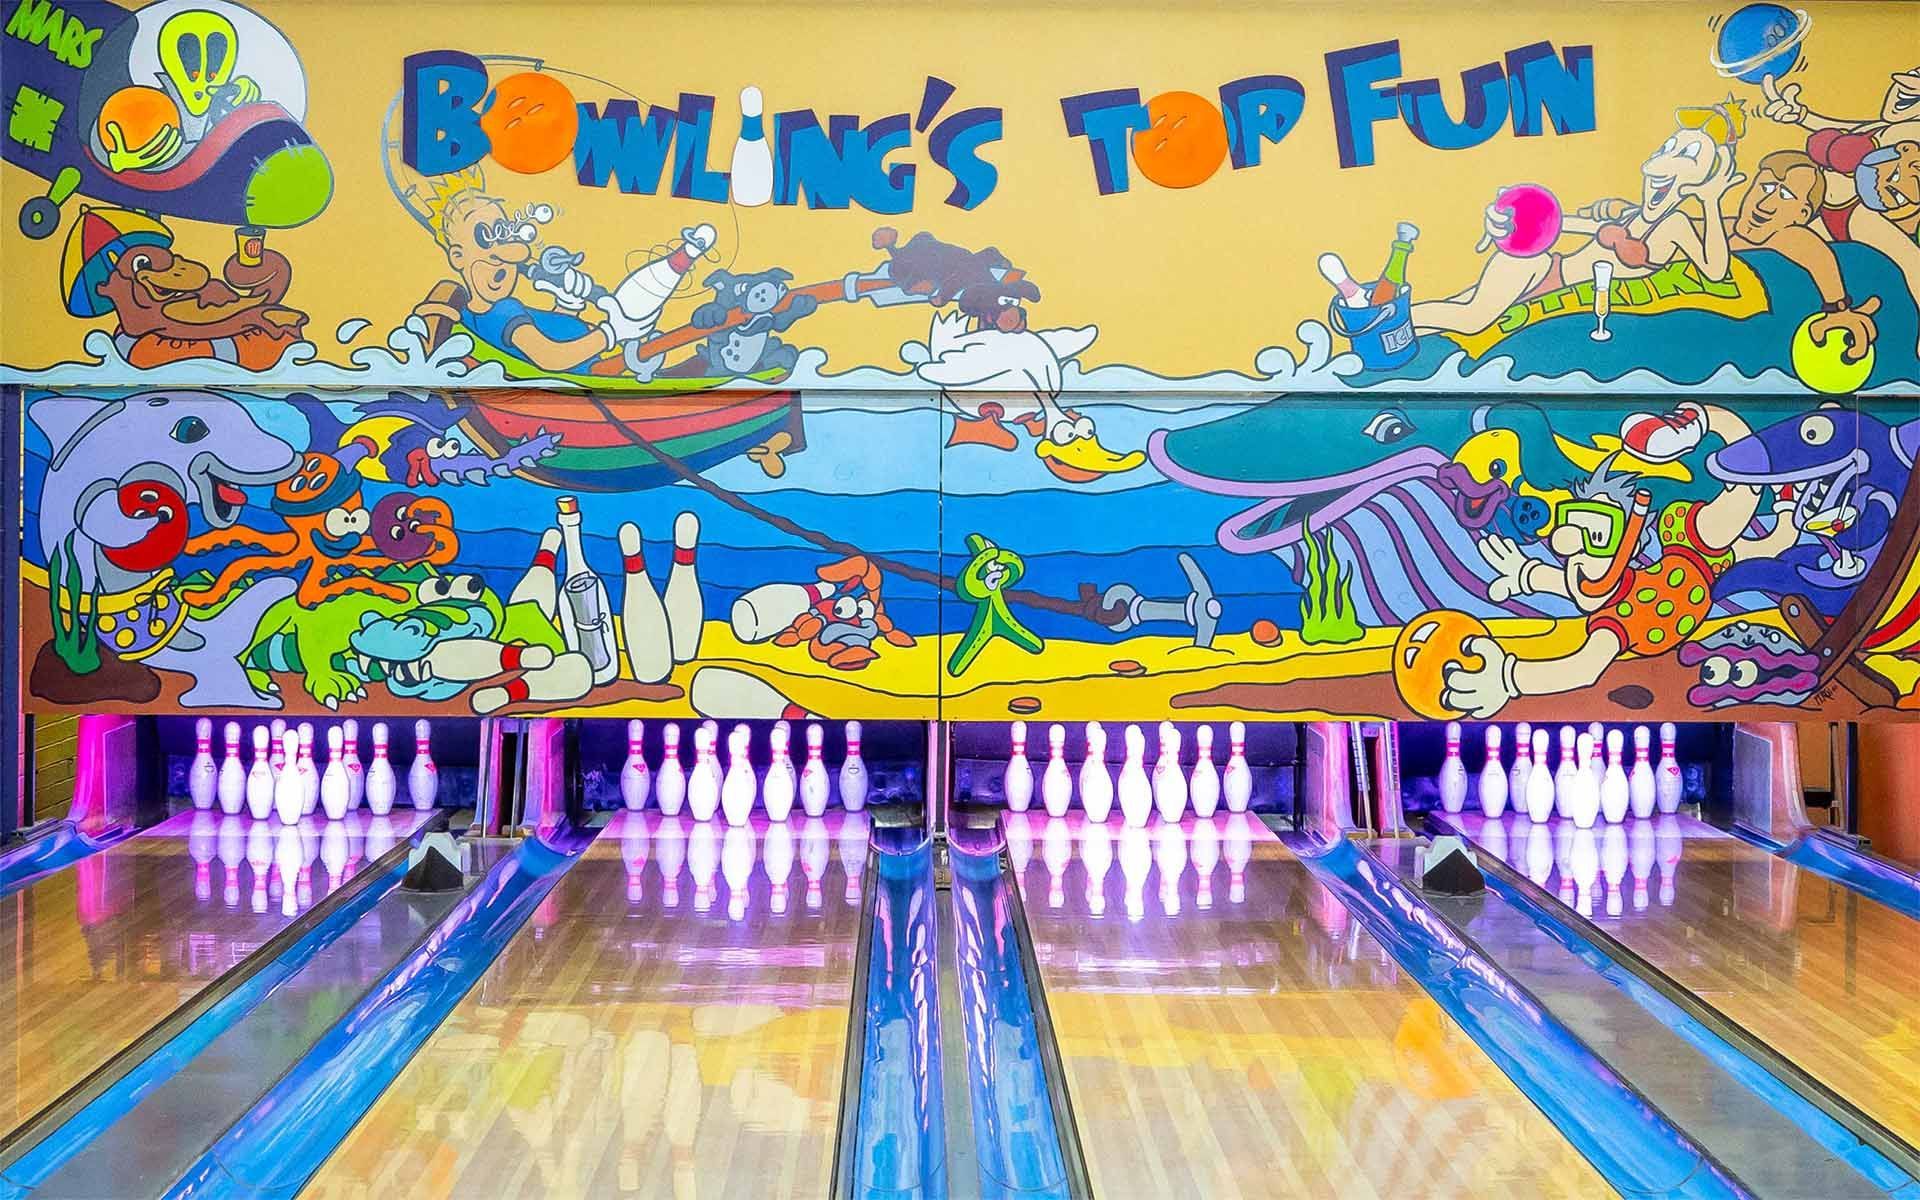 Ten Pin Bowling in Merimbula - Top Fun